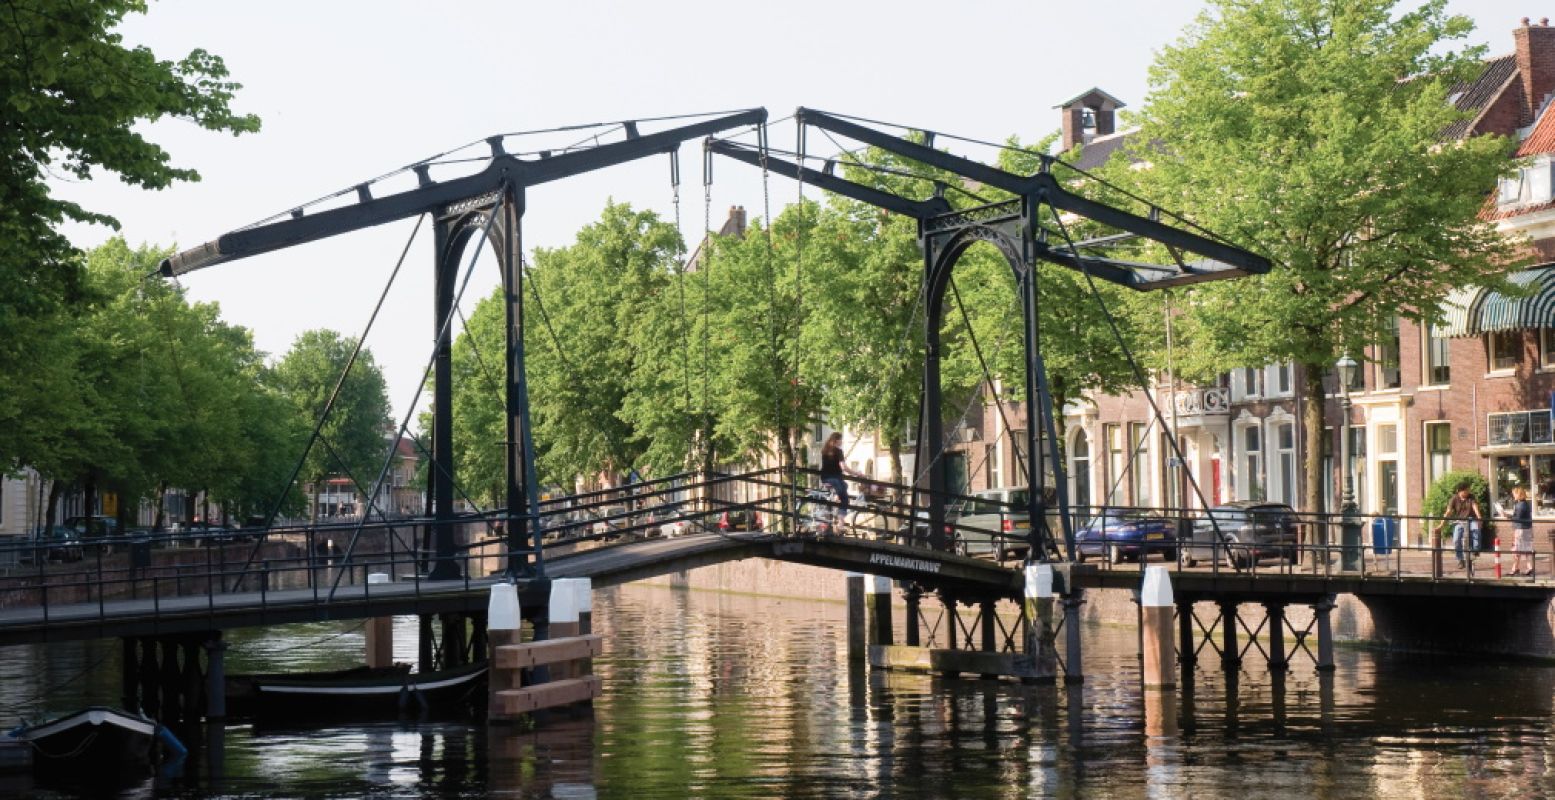 De binnenstad van Schiedam zit vol met typisch Hollandse plaatjes. Foto: Fleur Kooiman.